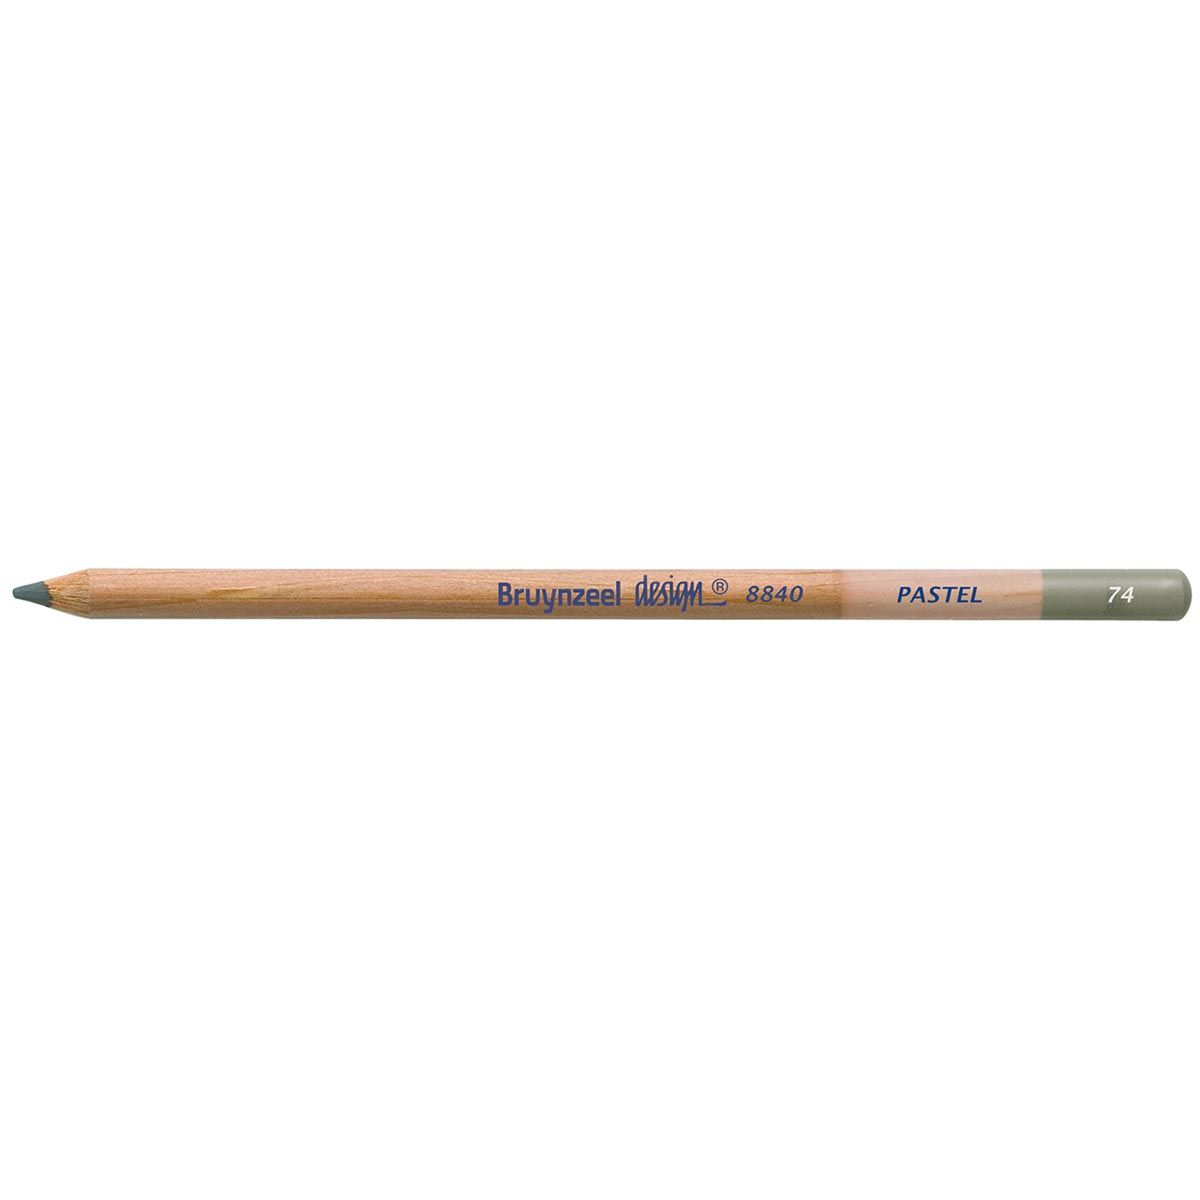 Bruynzeel Design Pastel Pencil - Dark Gray 74